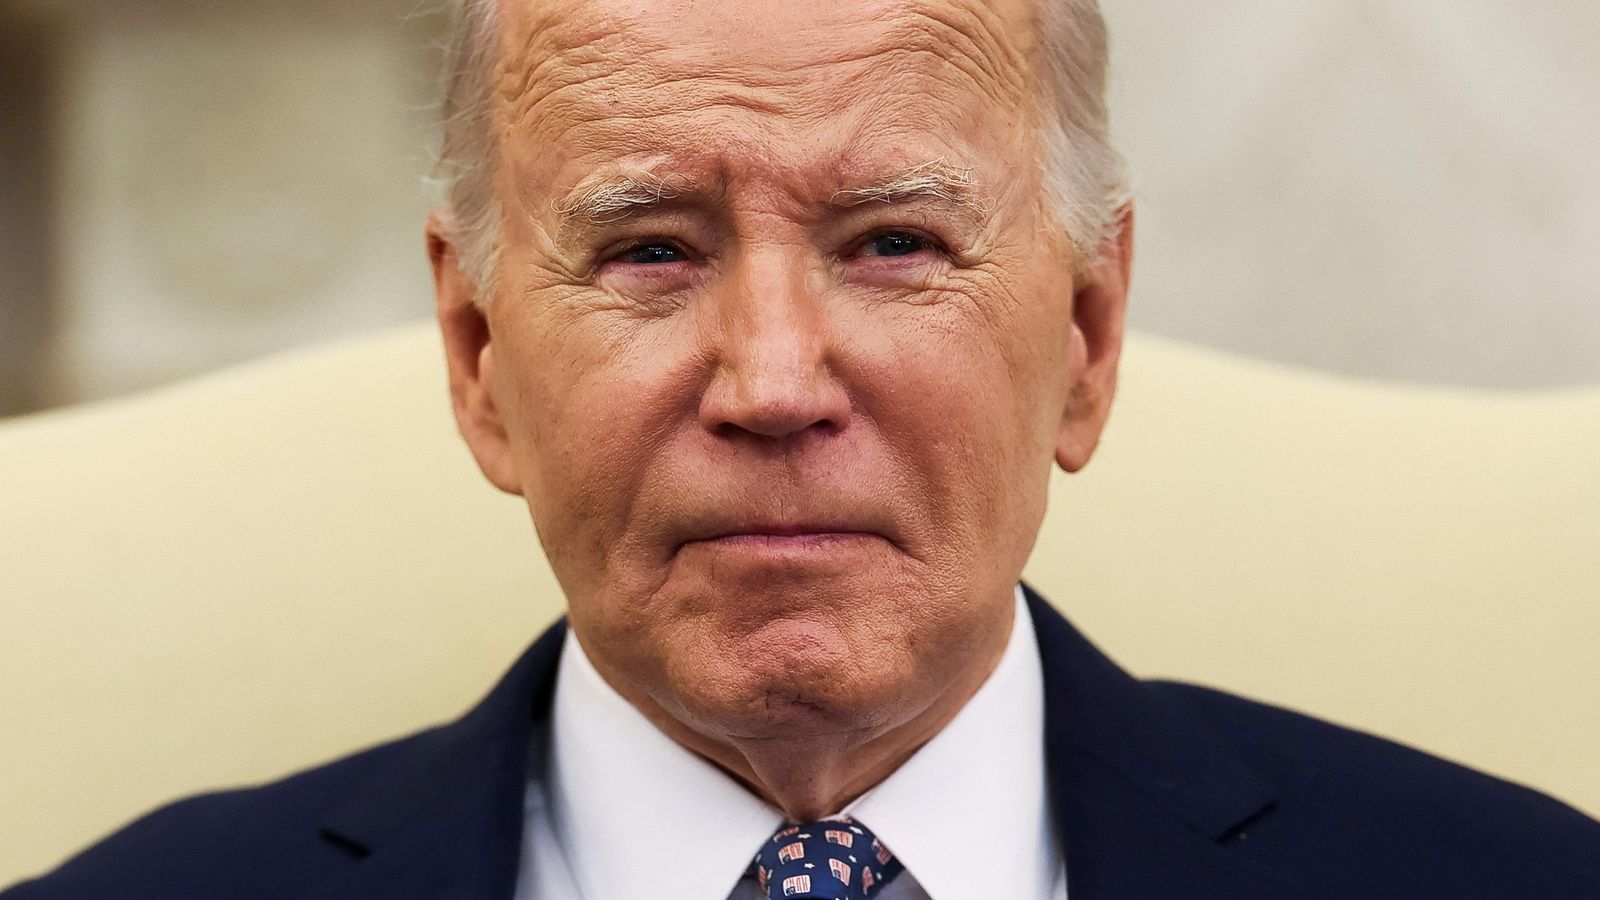 Joe Biden still 'fit for duty' at 81, doctor says, despite president avoiding cognitive test